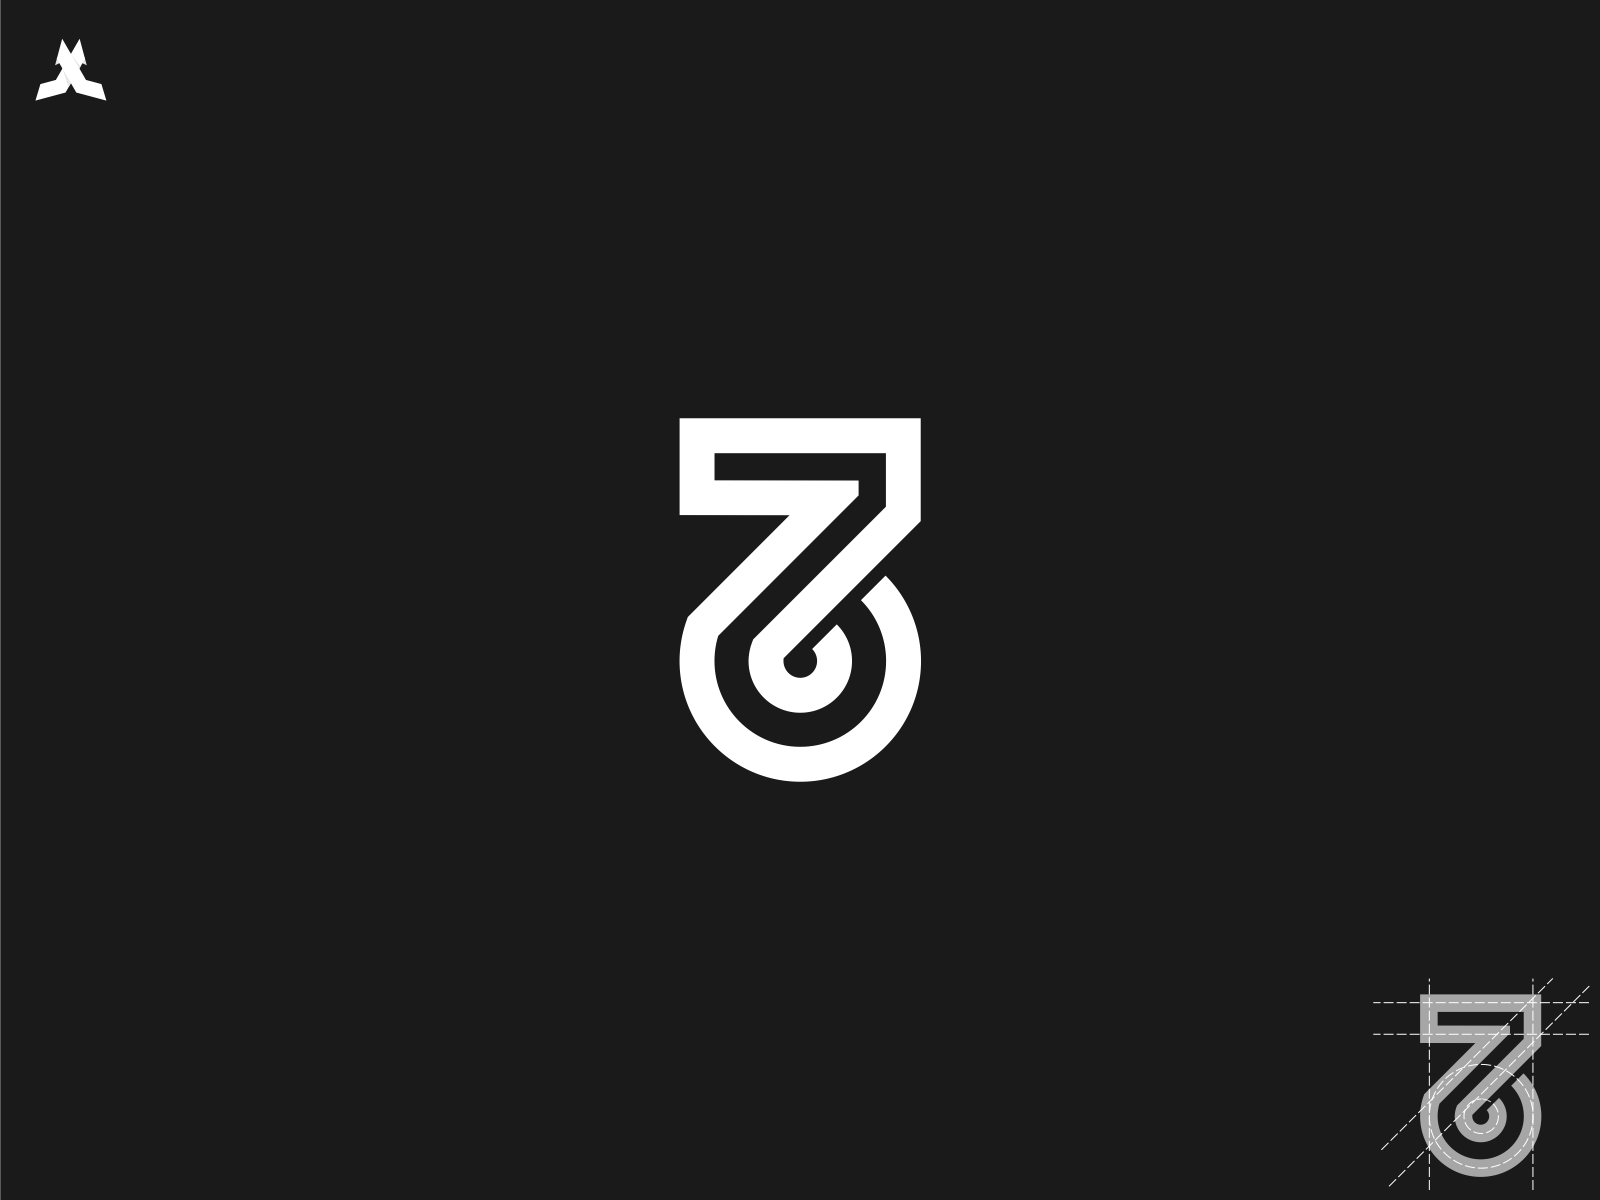 76 logo by logo_jo394 on Dribbble